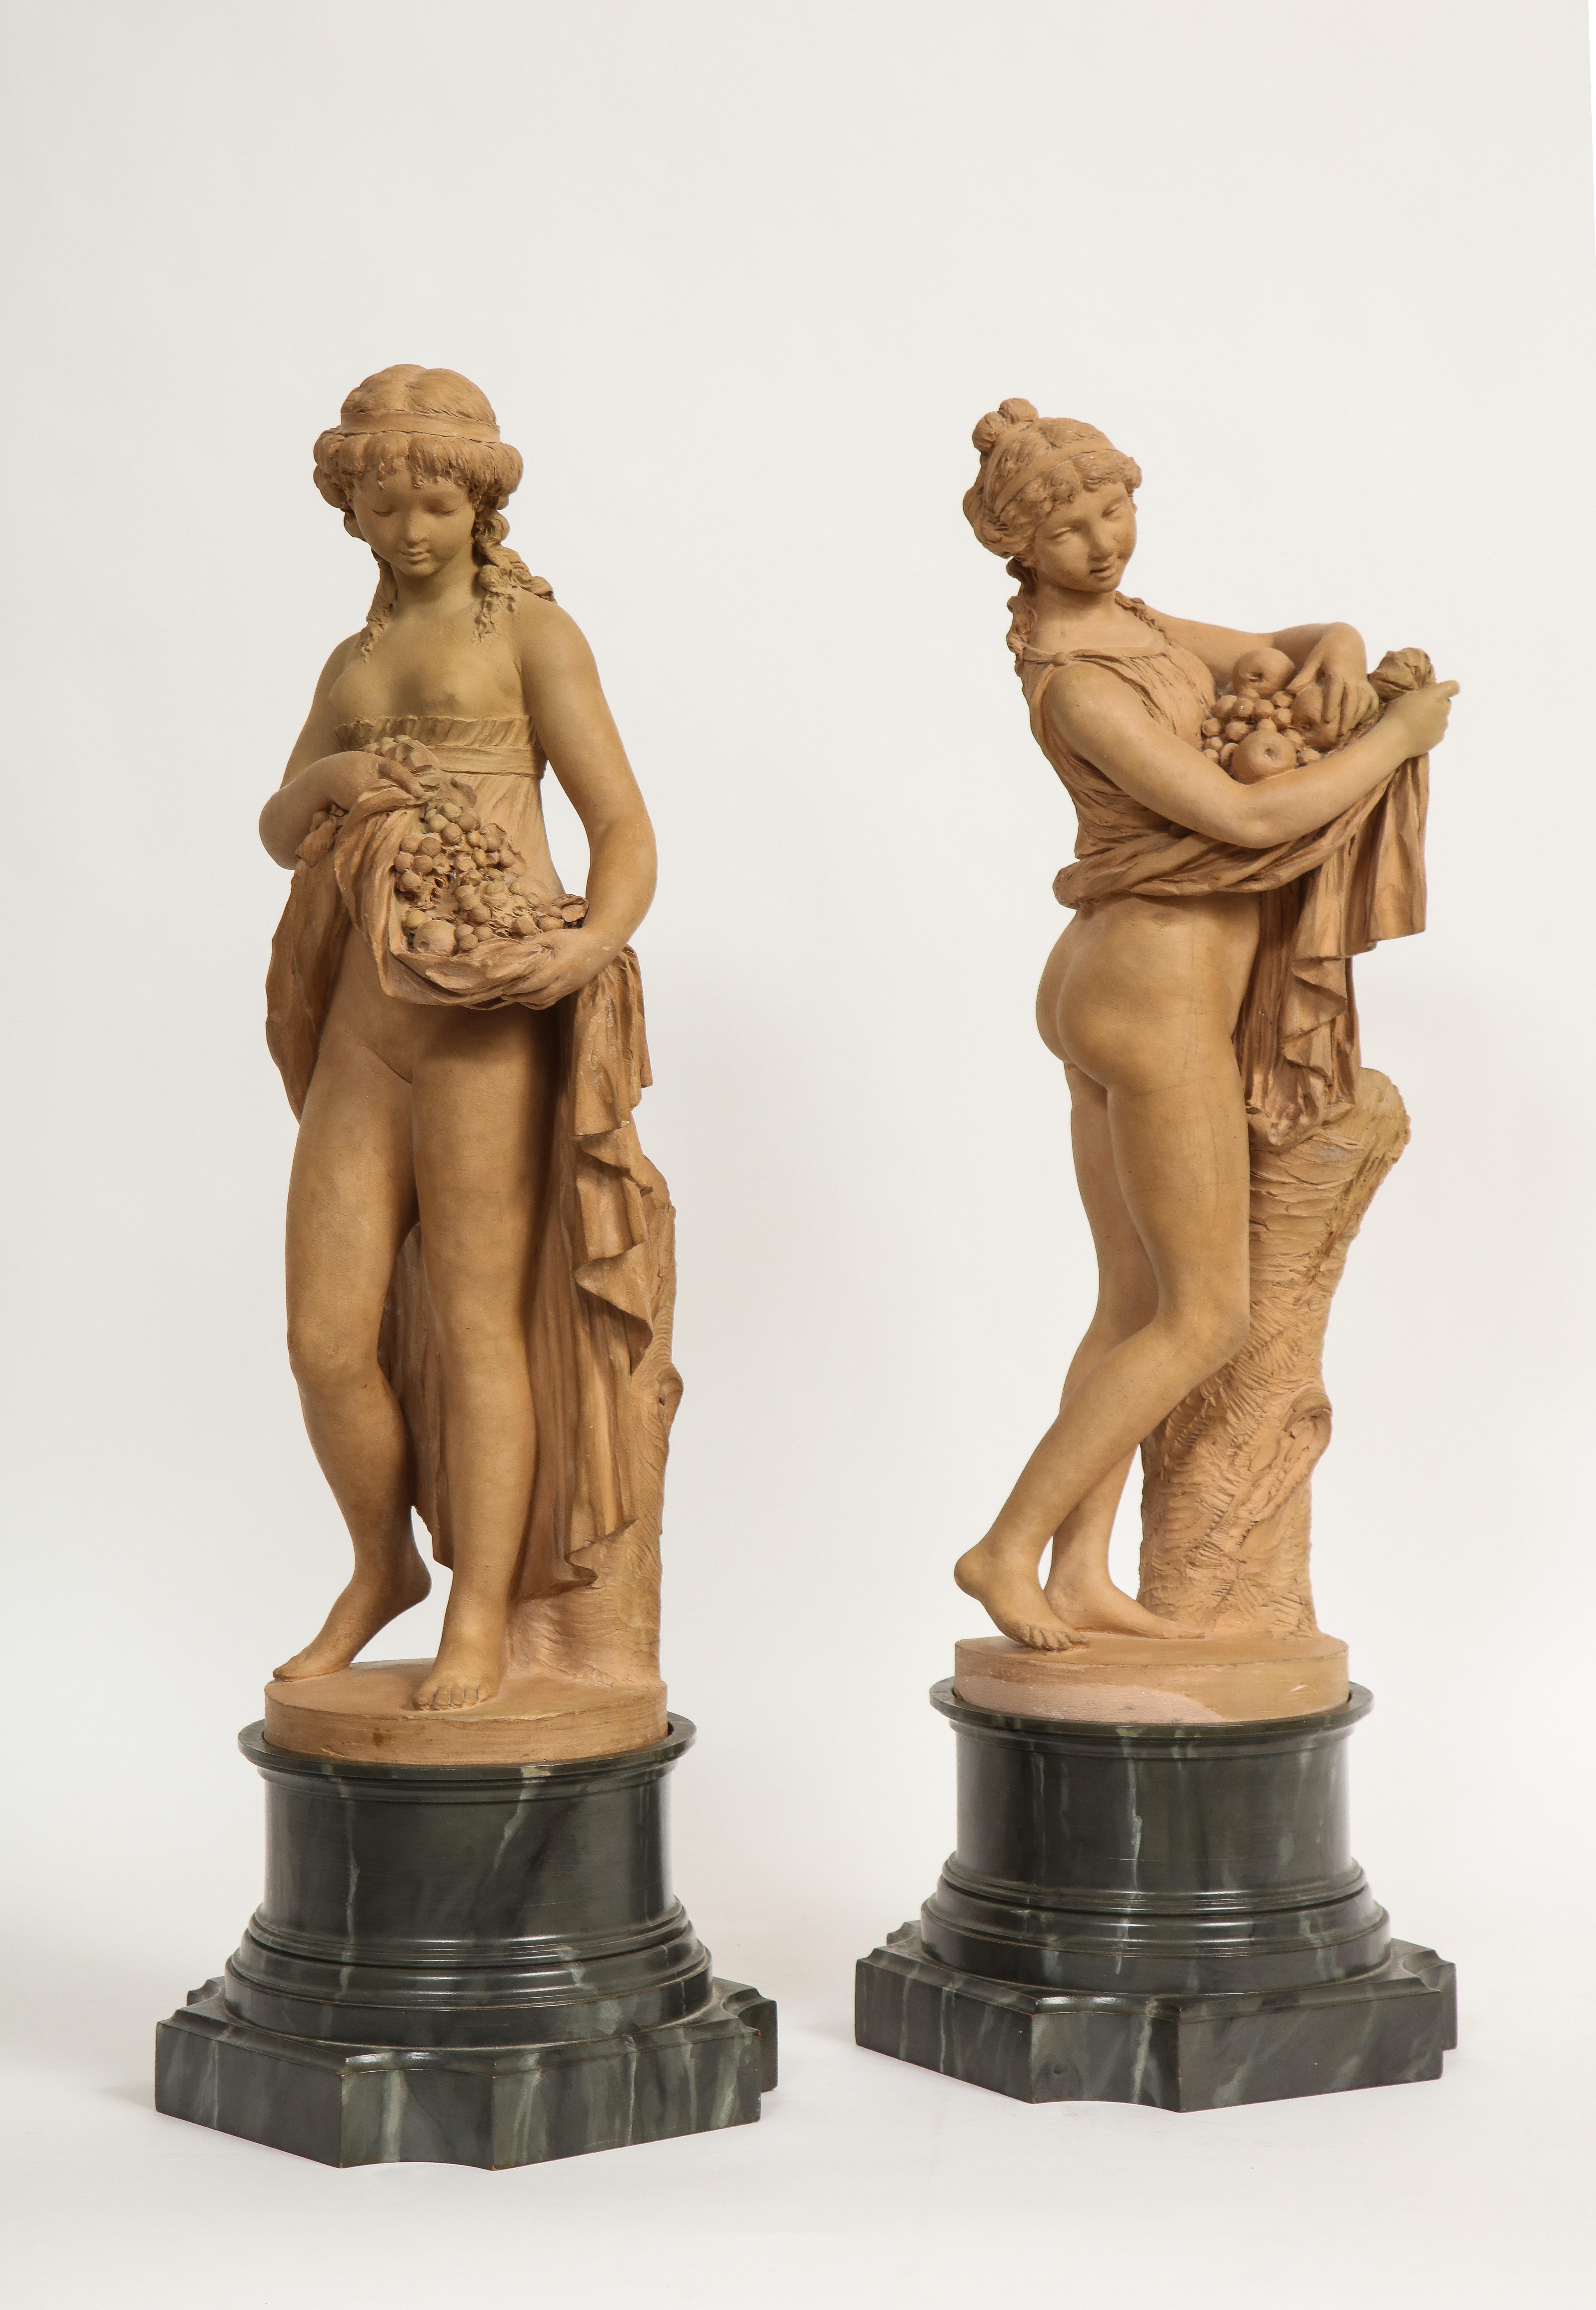 Ein fantastisches Paar französischer Terrakotta-Figuren aus dem 18./19. Jahrhundert: Pomona und ein Mädchen, das Früchte in ihrem Rock trägt, signiert Clodion. Diese außergewöhnlichen Terrakotta-Figuren zweier schöner Frauen stammen von einem der